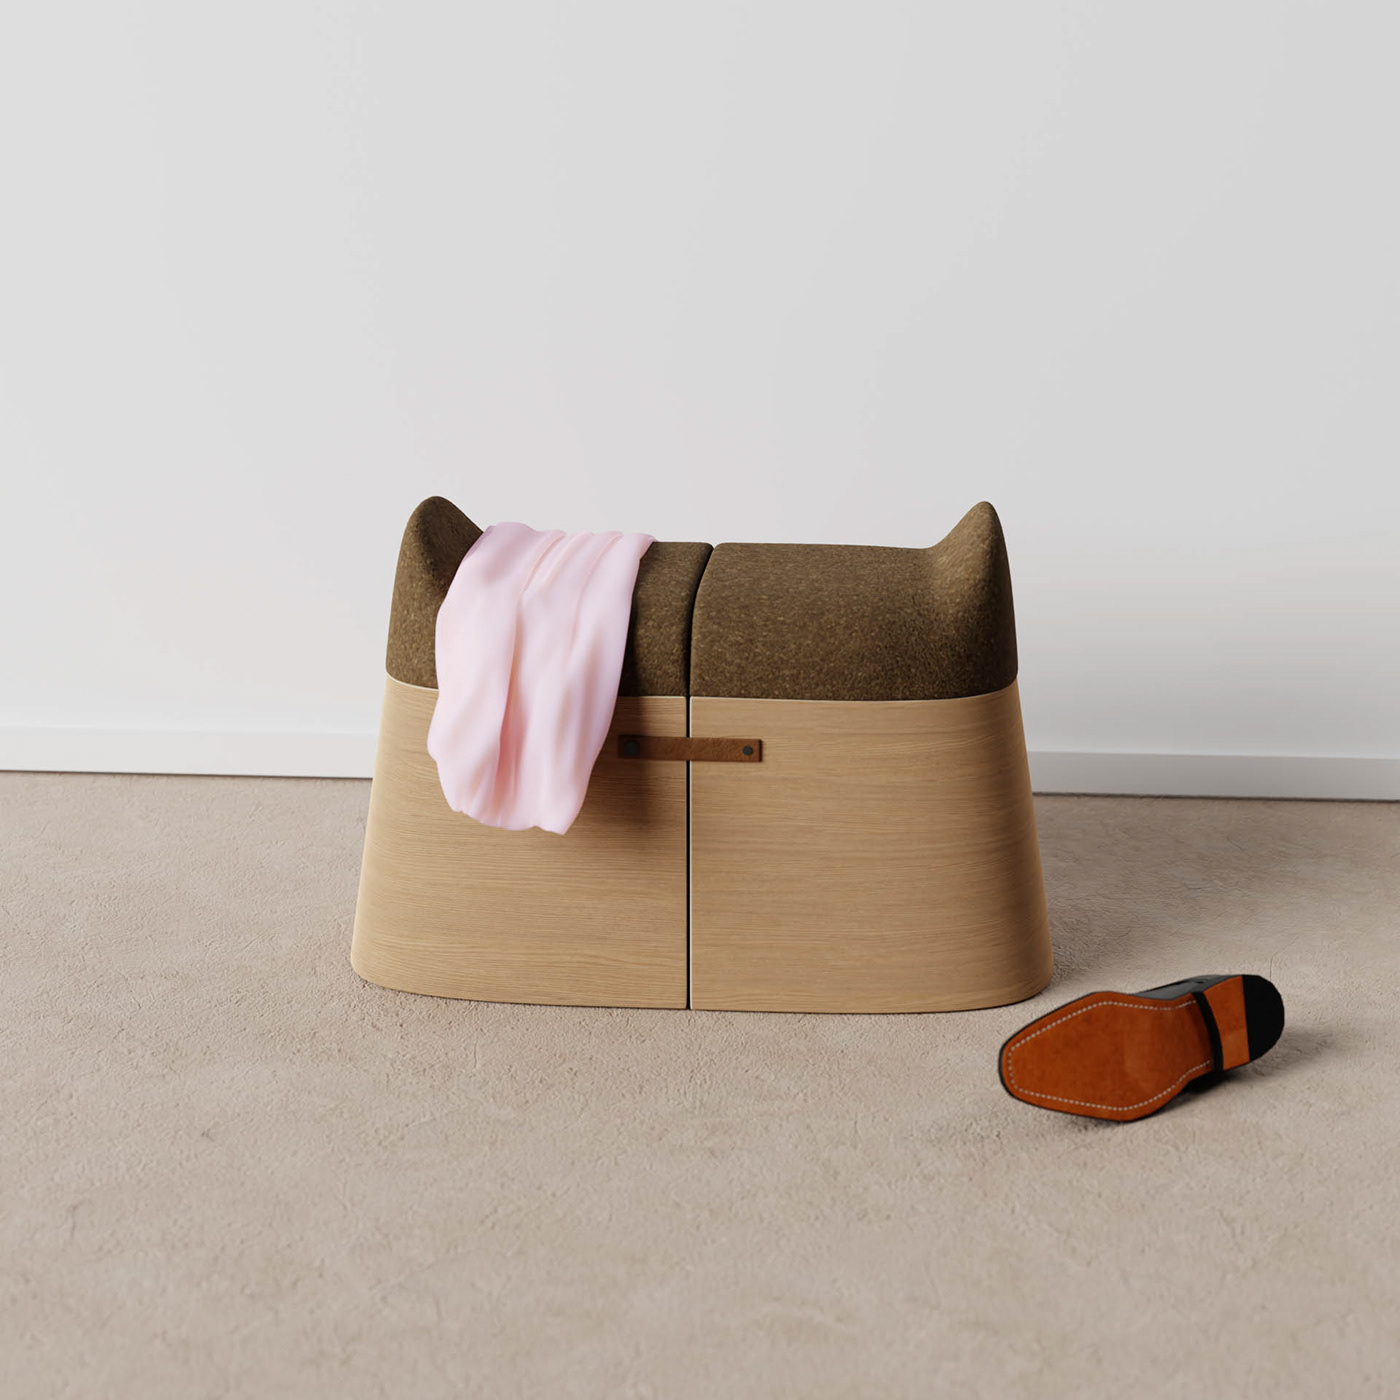 blender cork design furniture industrial design  interior design  product design  stool wood